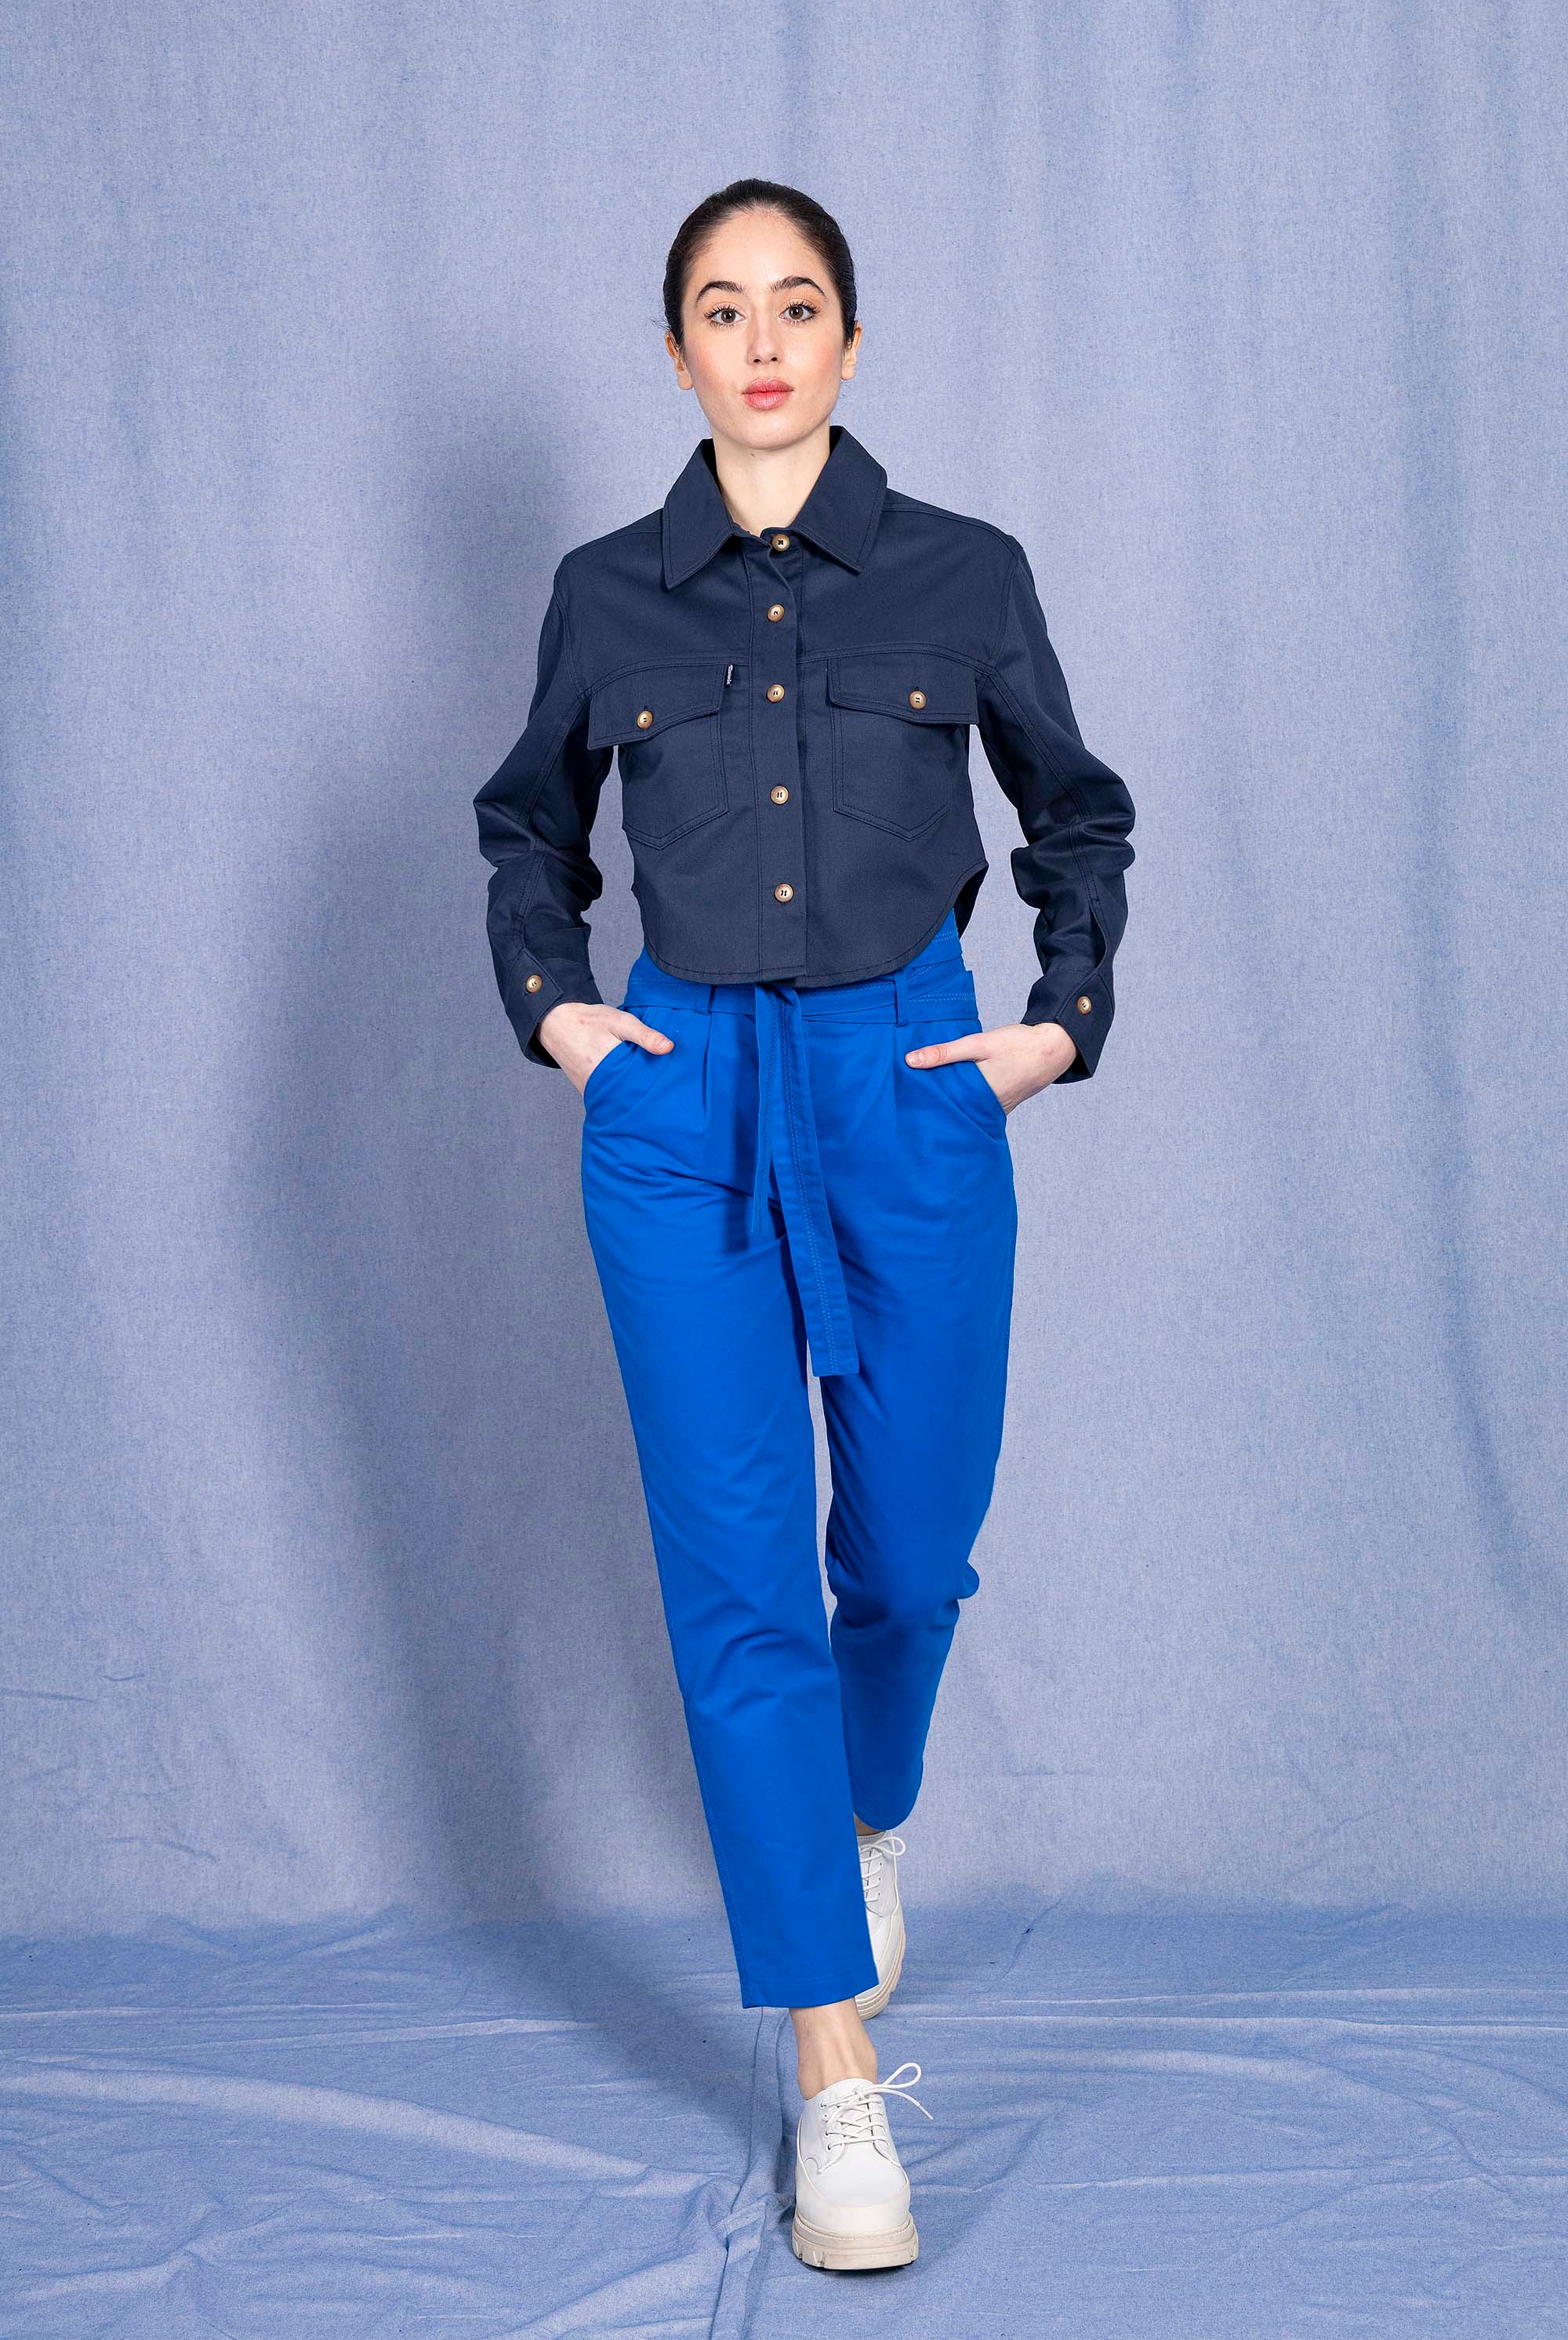 Chemise Arlet Bleu Marine chemise Misericordia, librement inspirée de différents univers